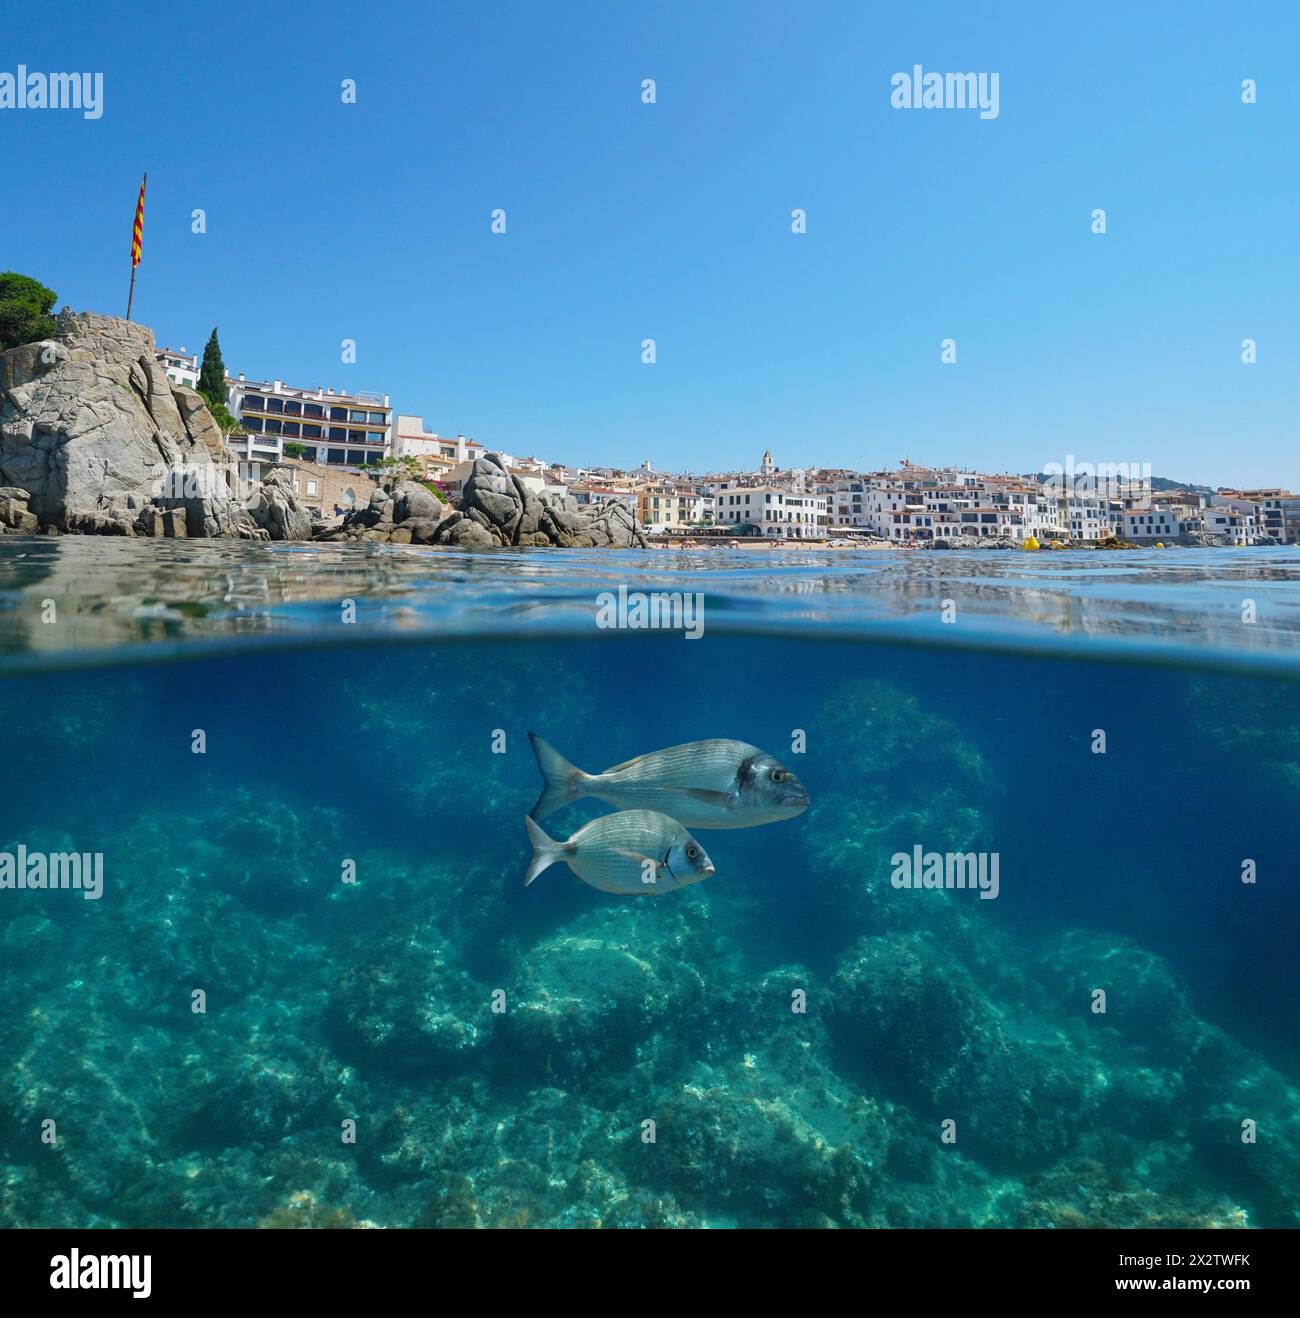 Ville balnéaire Calella de Palafrugell sur la côte méditerranéenne en Espagne vue de la surface de la mer avec des poissons sous l'eau, scène naturelle, vue partagée Banque D'Images